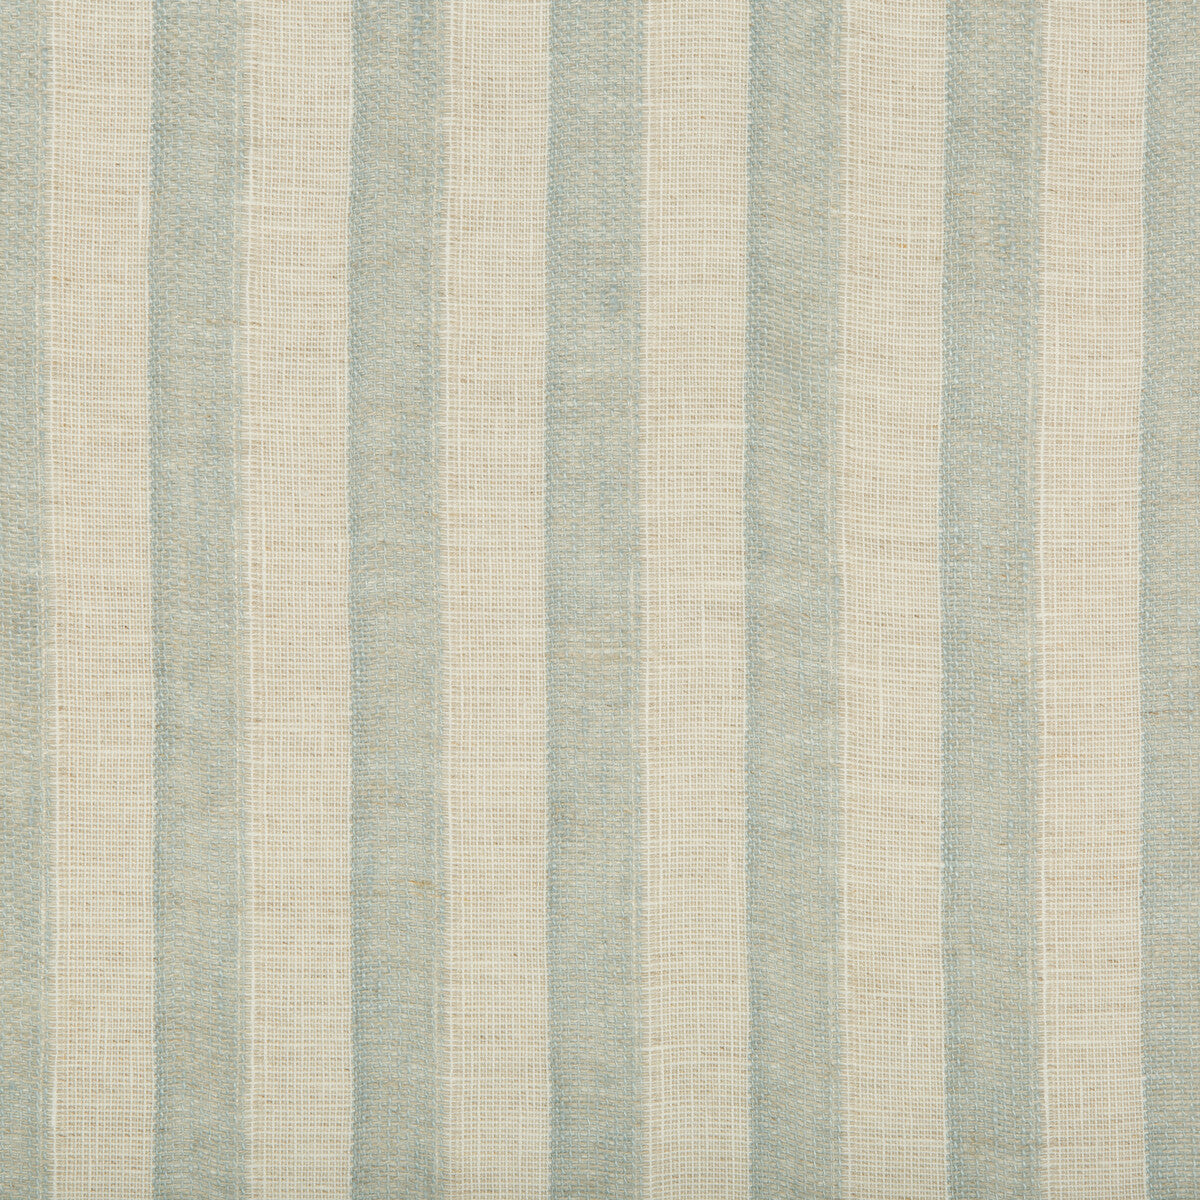 Kravet Design fabric in 4592-123 color - pattern 4592.123.0 - by Kravet Design